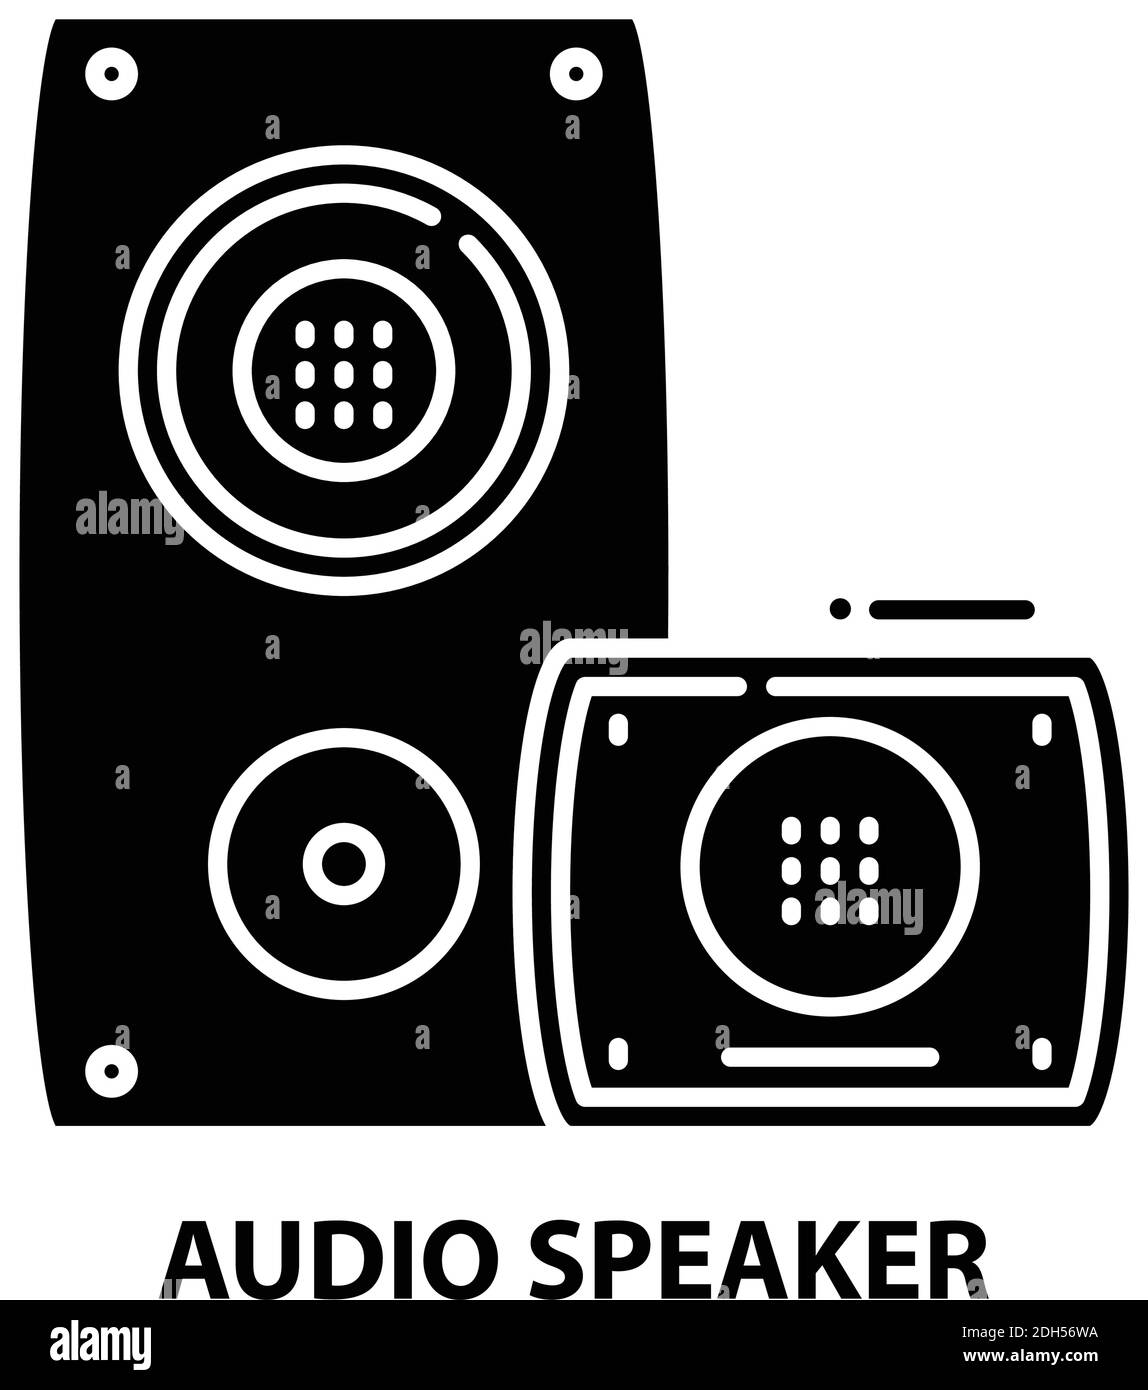 Lautsprecher-Symbol, schwarzes Vektorzeichen mit editierbaren Konturen, Konzeptdarstellung Stock Vektor